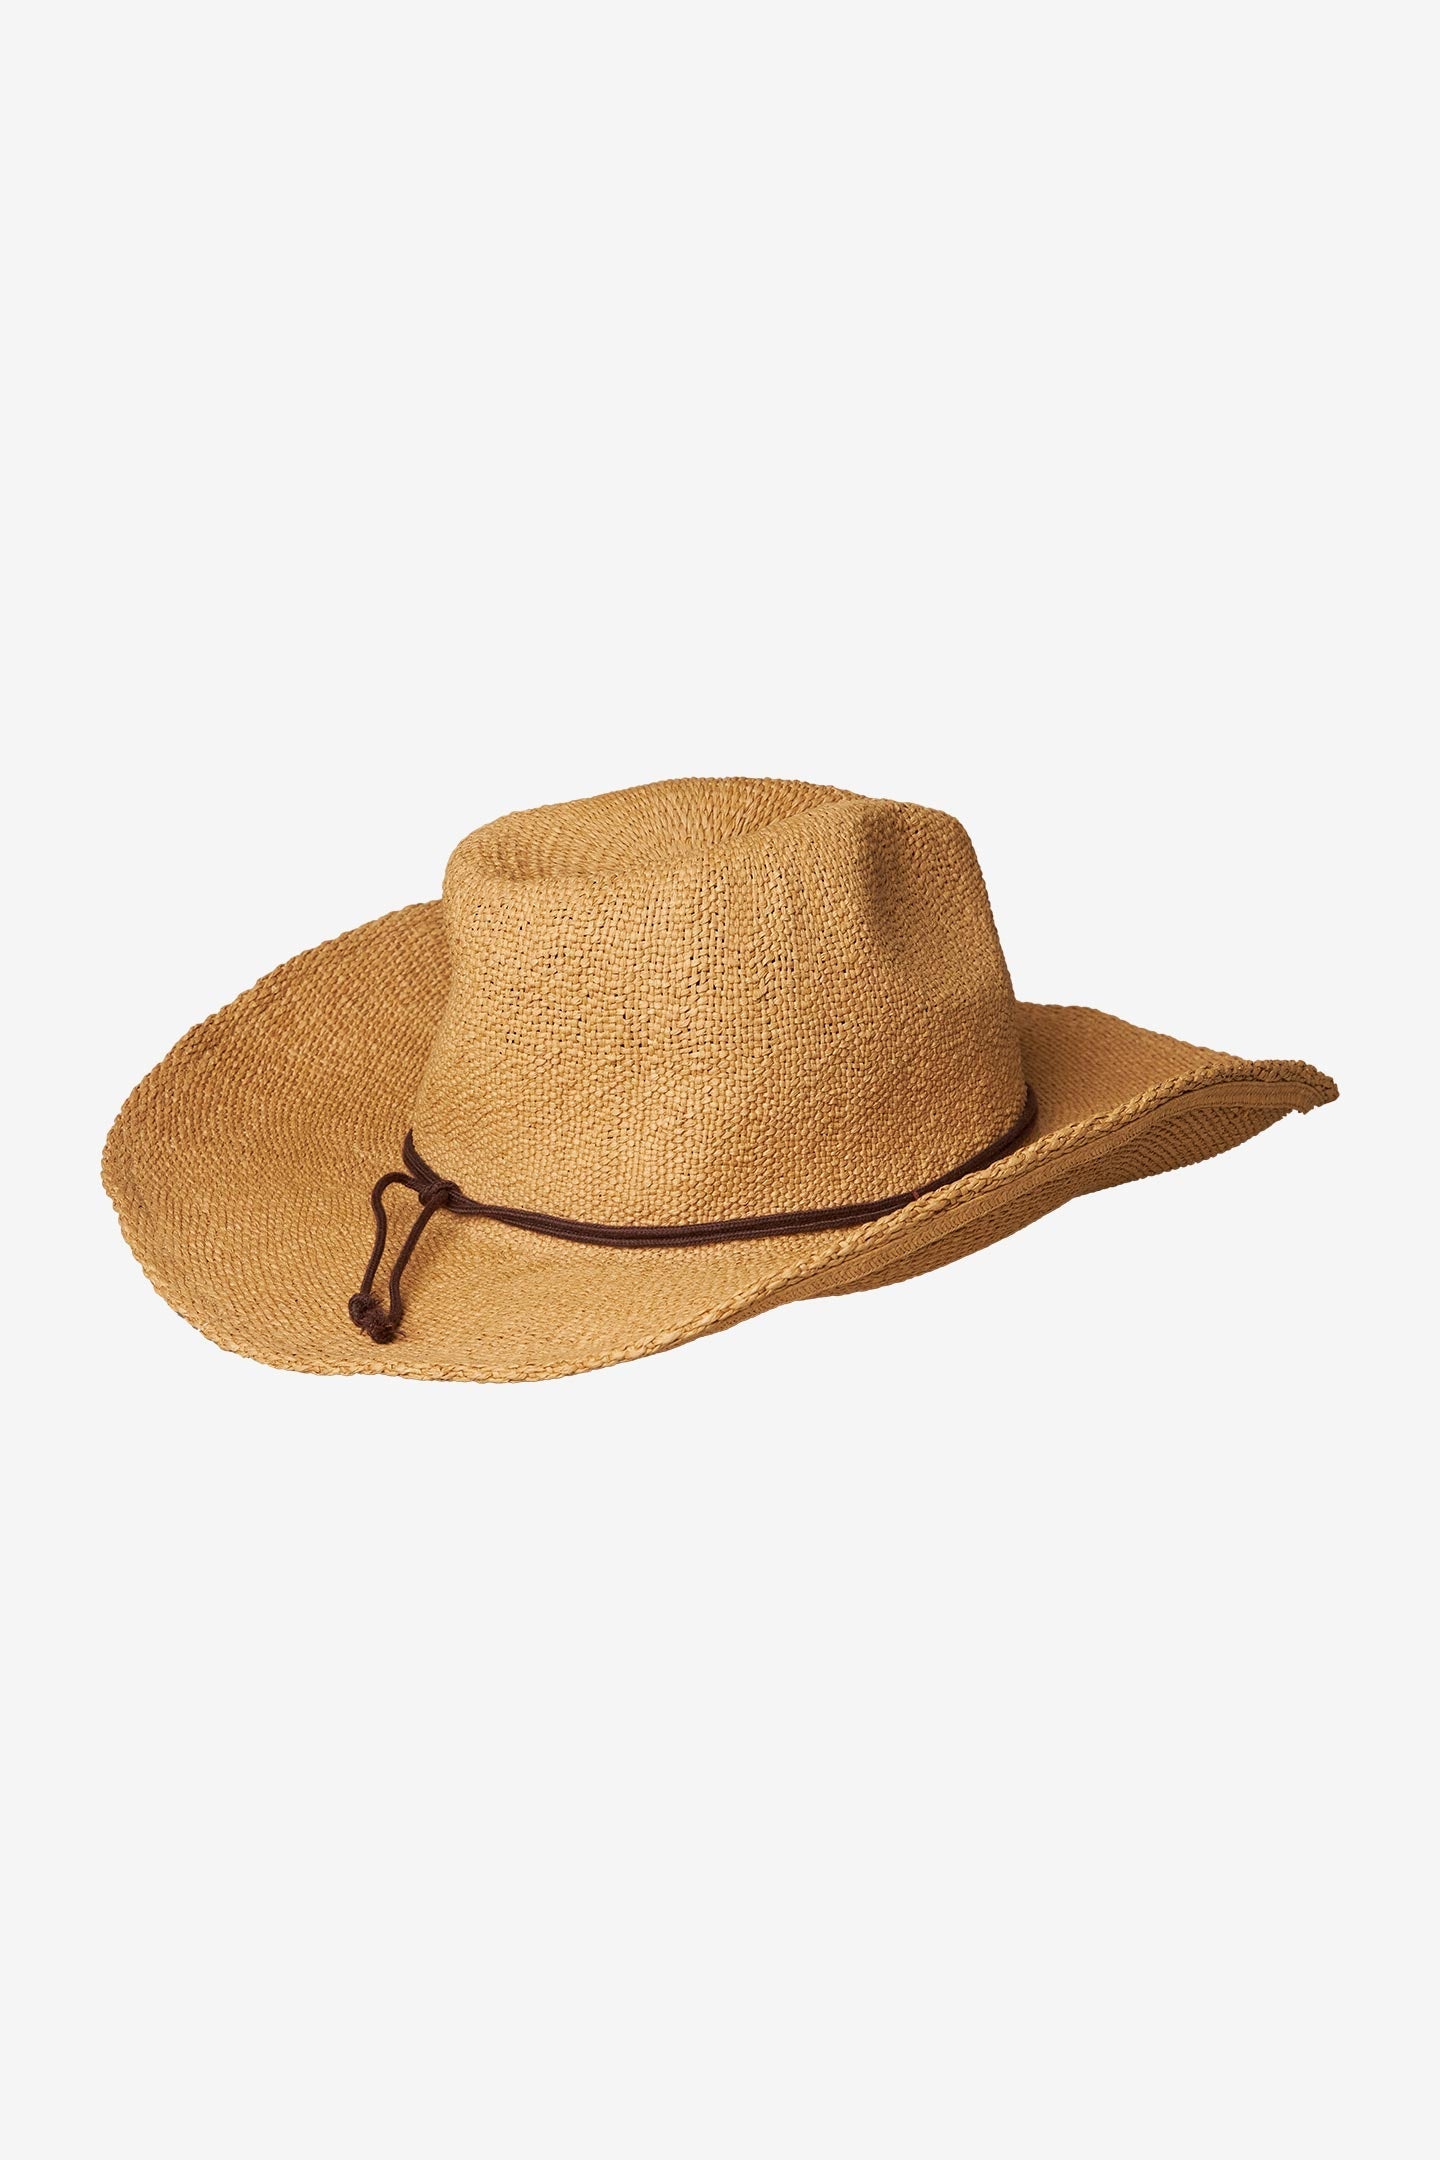 O'Neill Maya Sun Hat